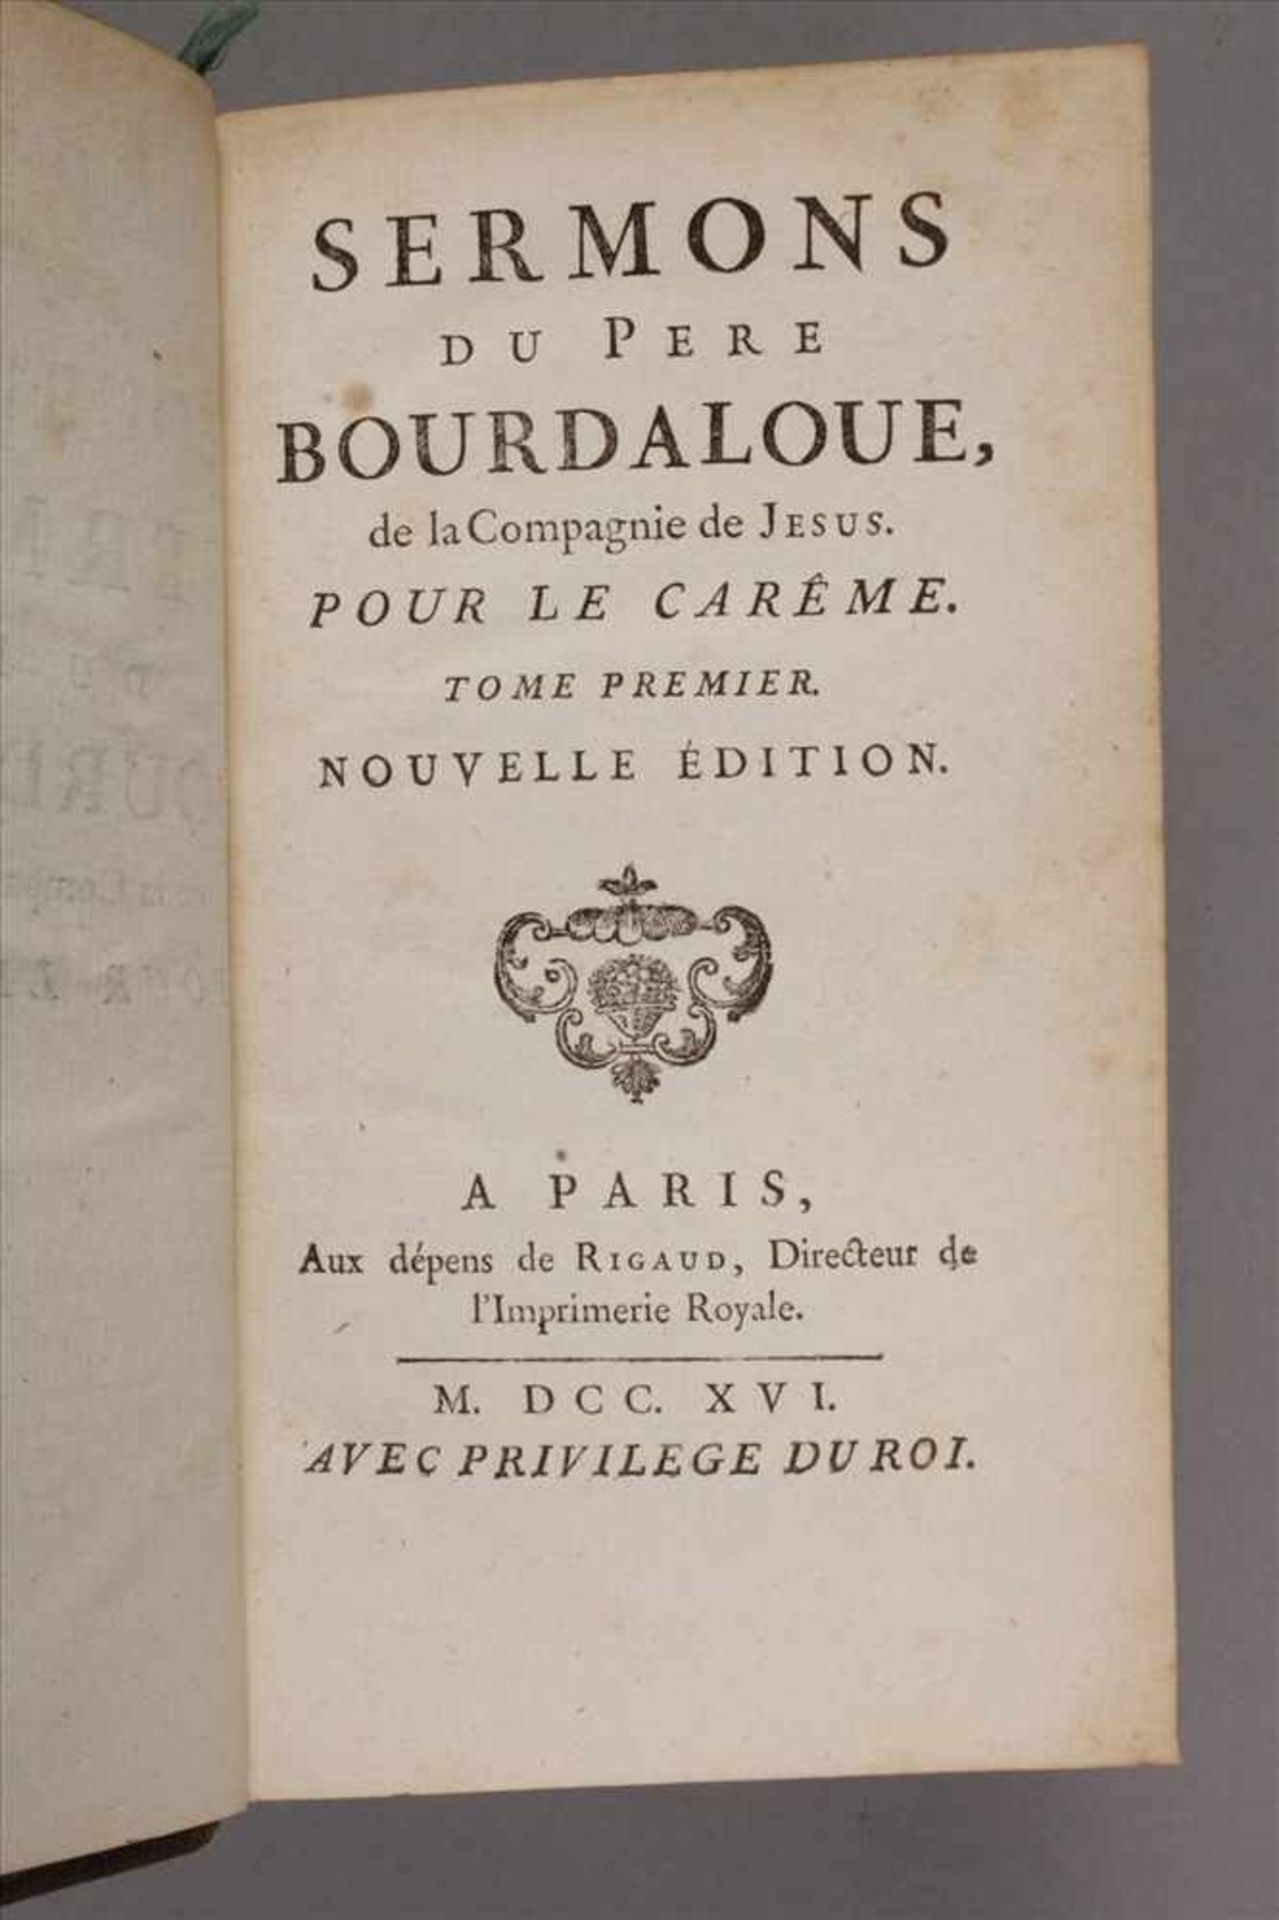 Sermons Bourdaloue/Massillon3 Bde. Sermons du pere Bourdaloue, de la Compagnie de Jesus: bestehend - Bild 3 aus 3